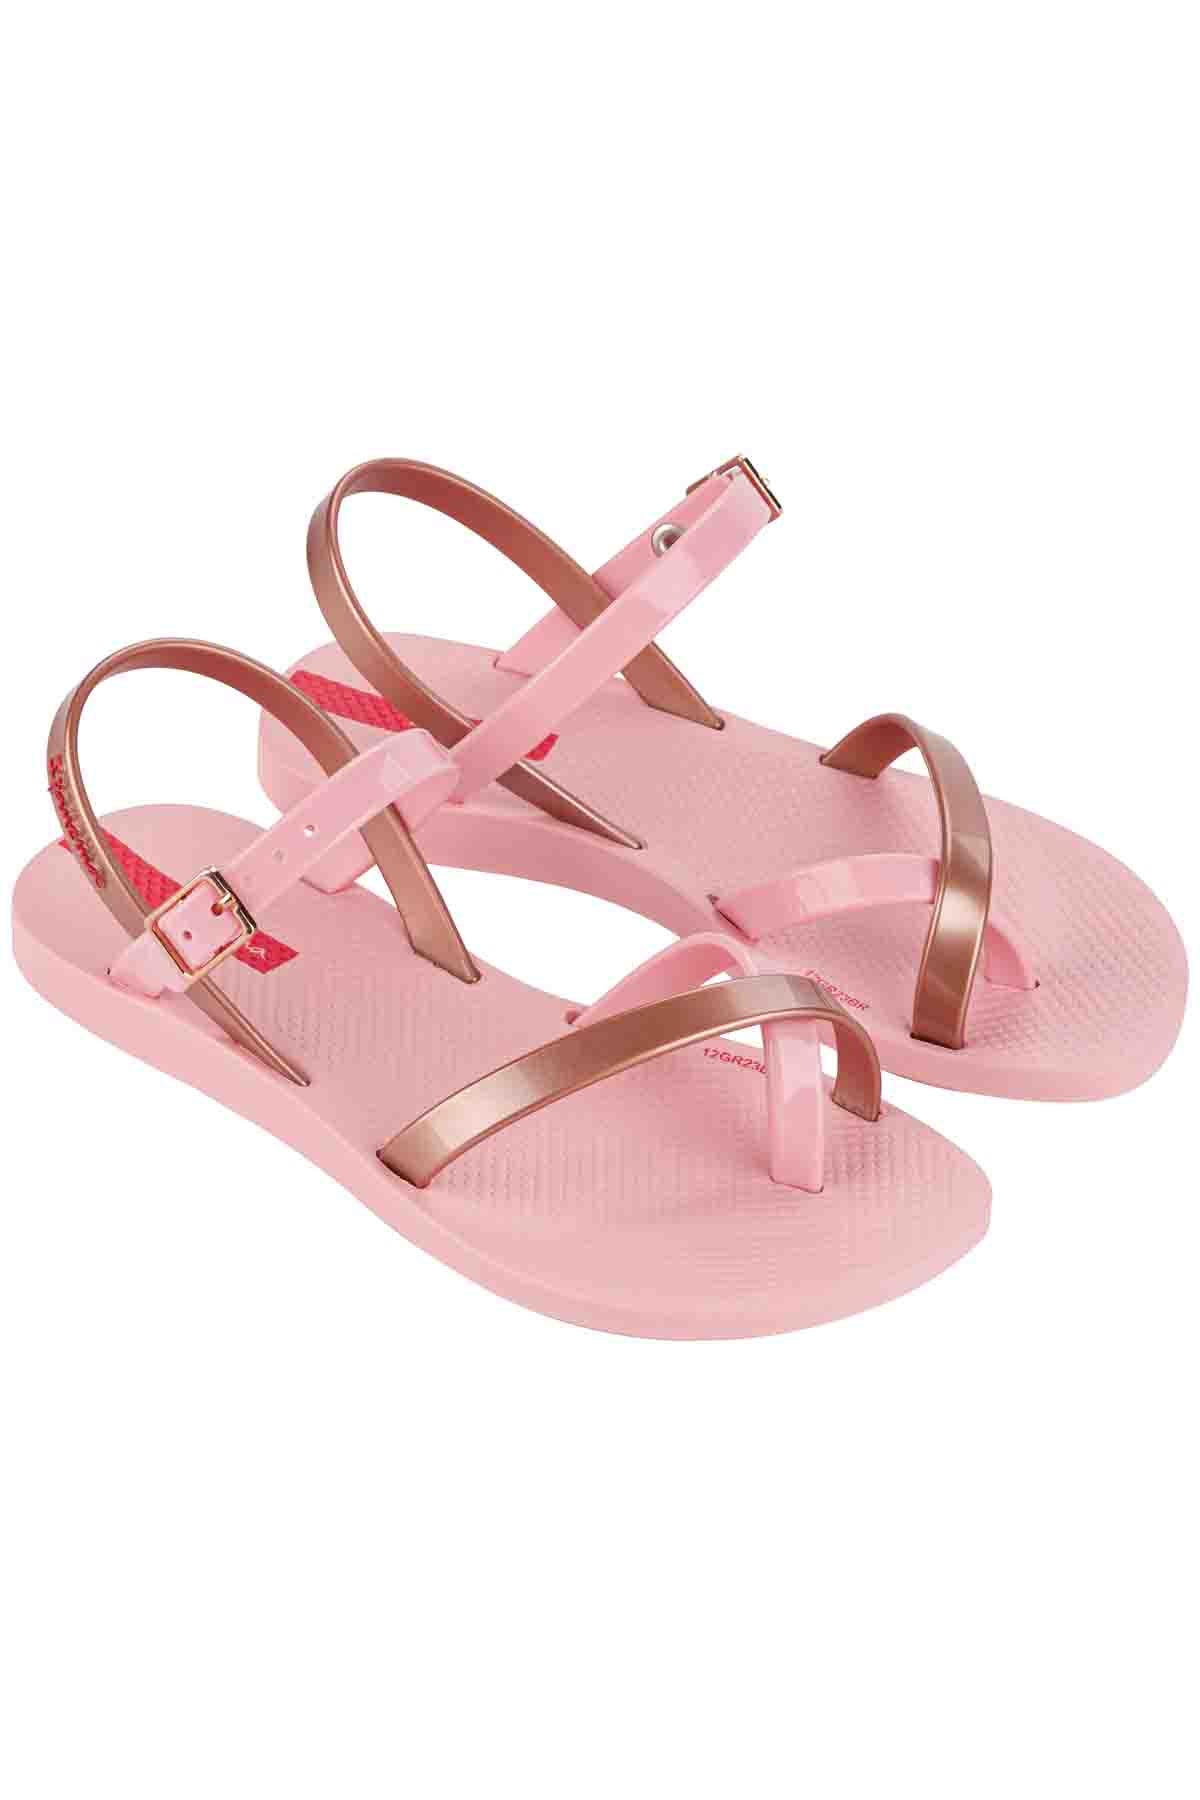 Slipper Fashion Sandal Kids